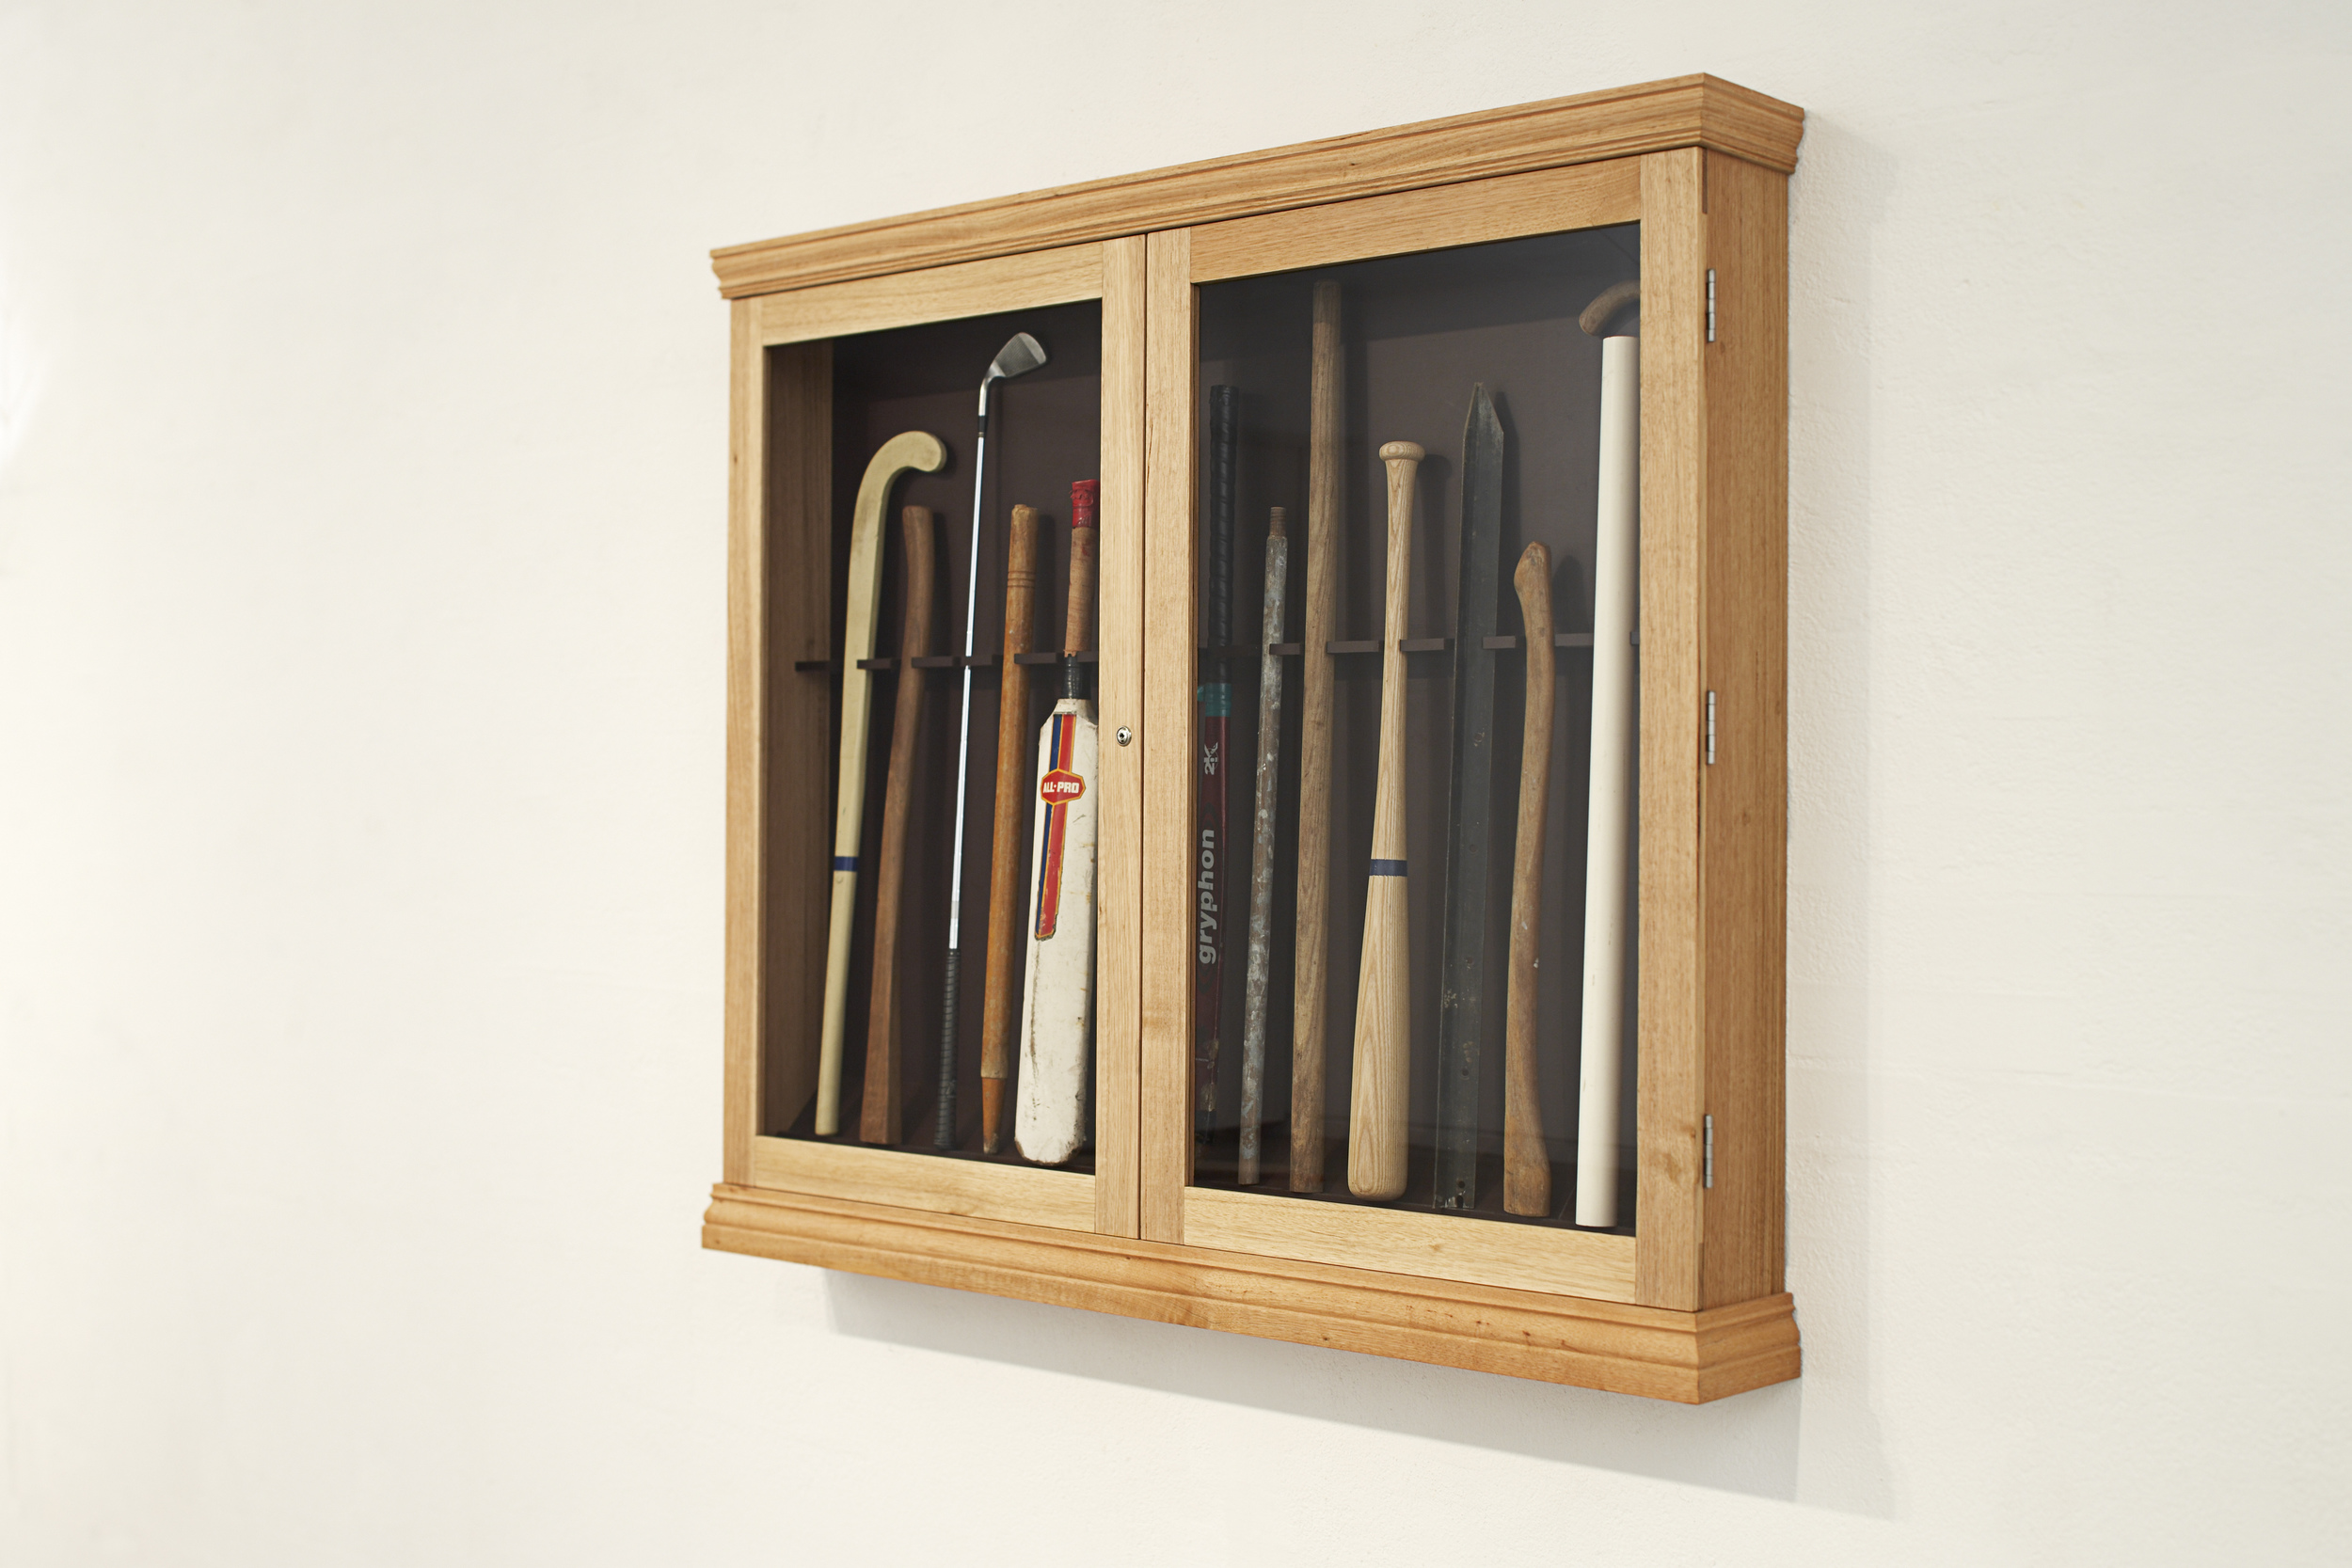  Burglar Sticks (Defence/Offence), 2009 Tasmanian Oak, Found Objects 129 x 148 x 20 cm 